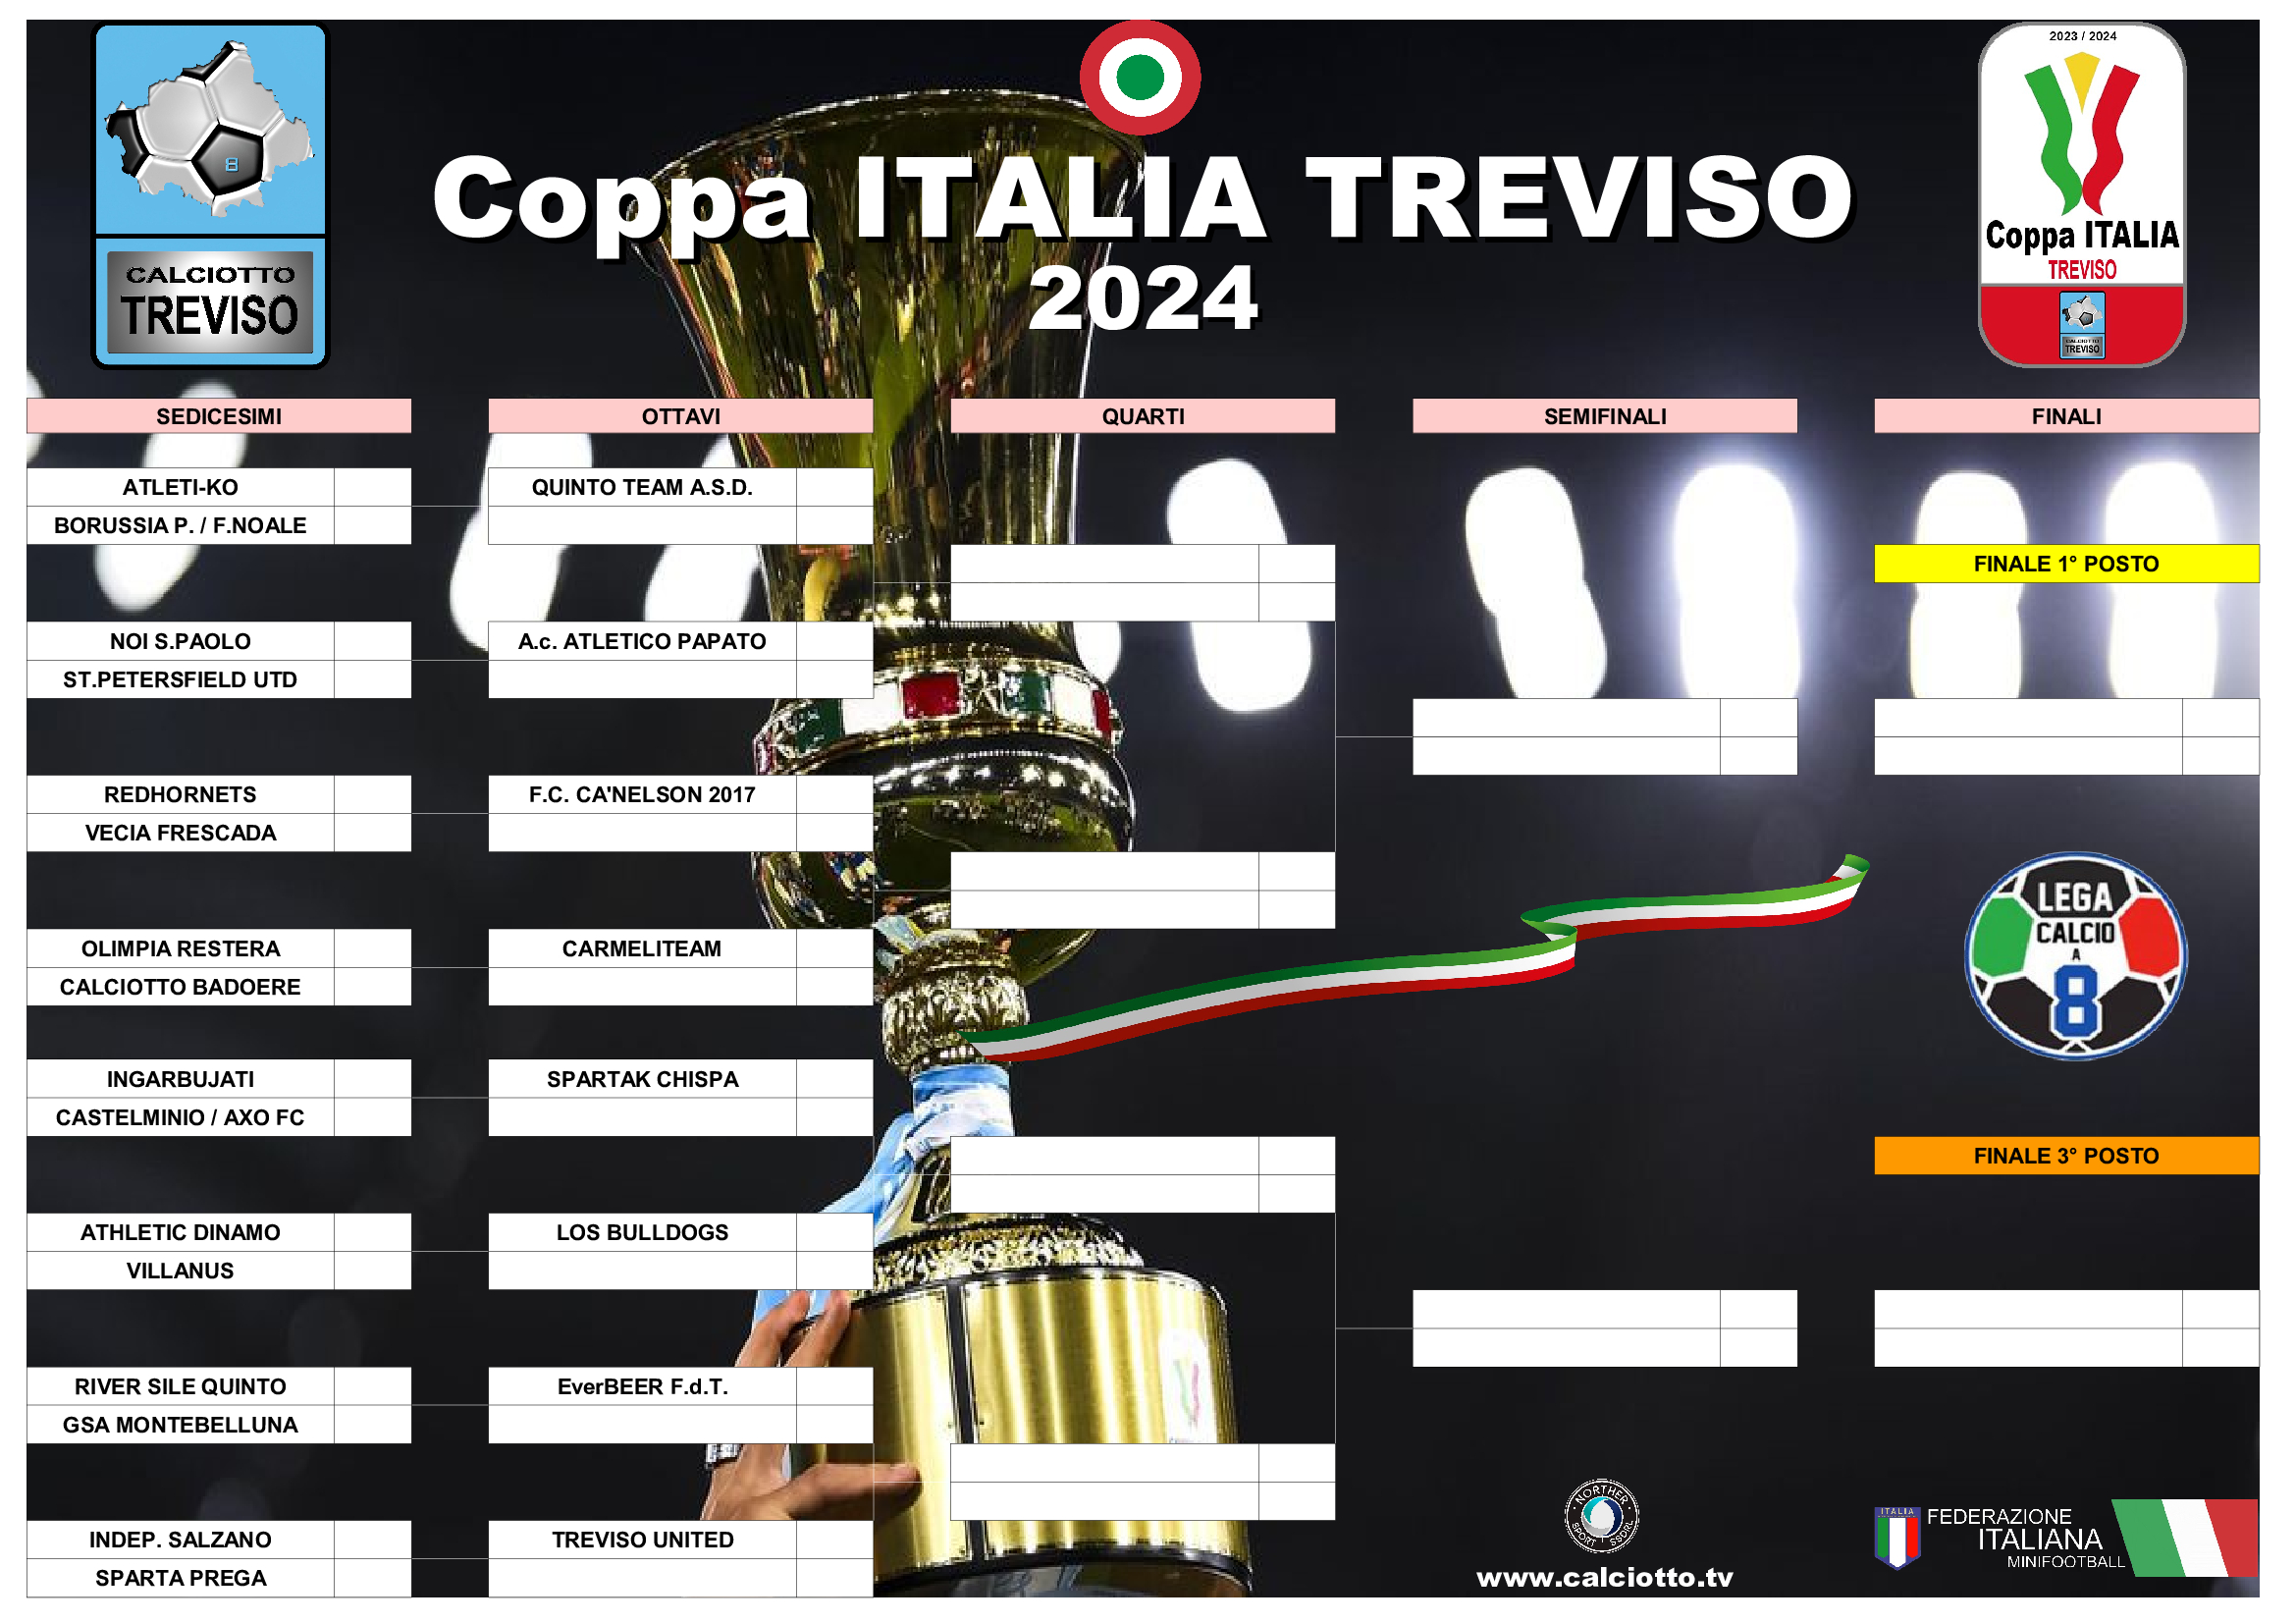 Coppa ITALIA TREVISO 2024 HOME